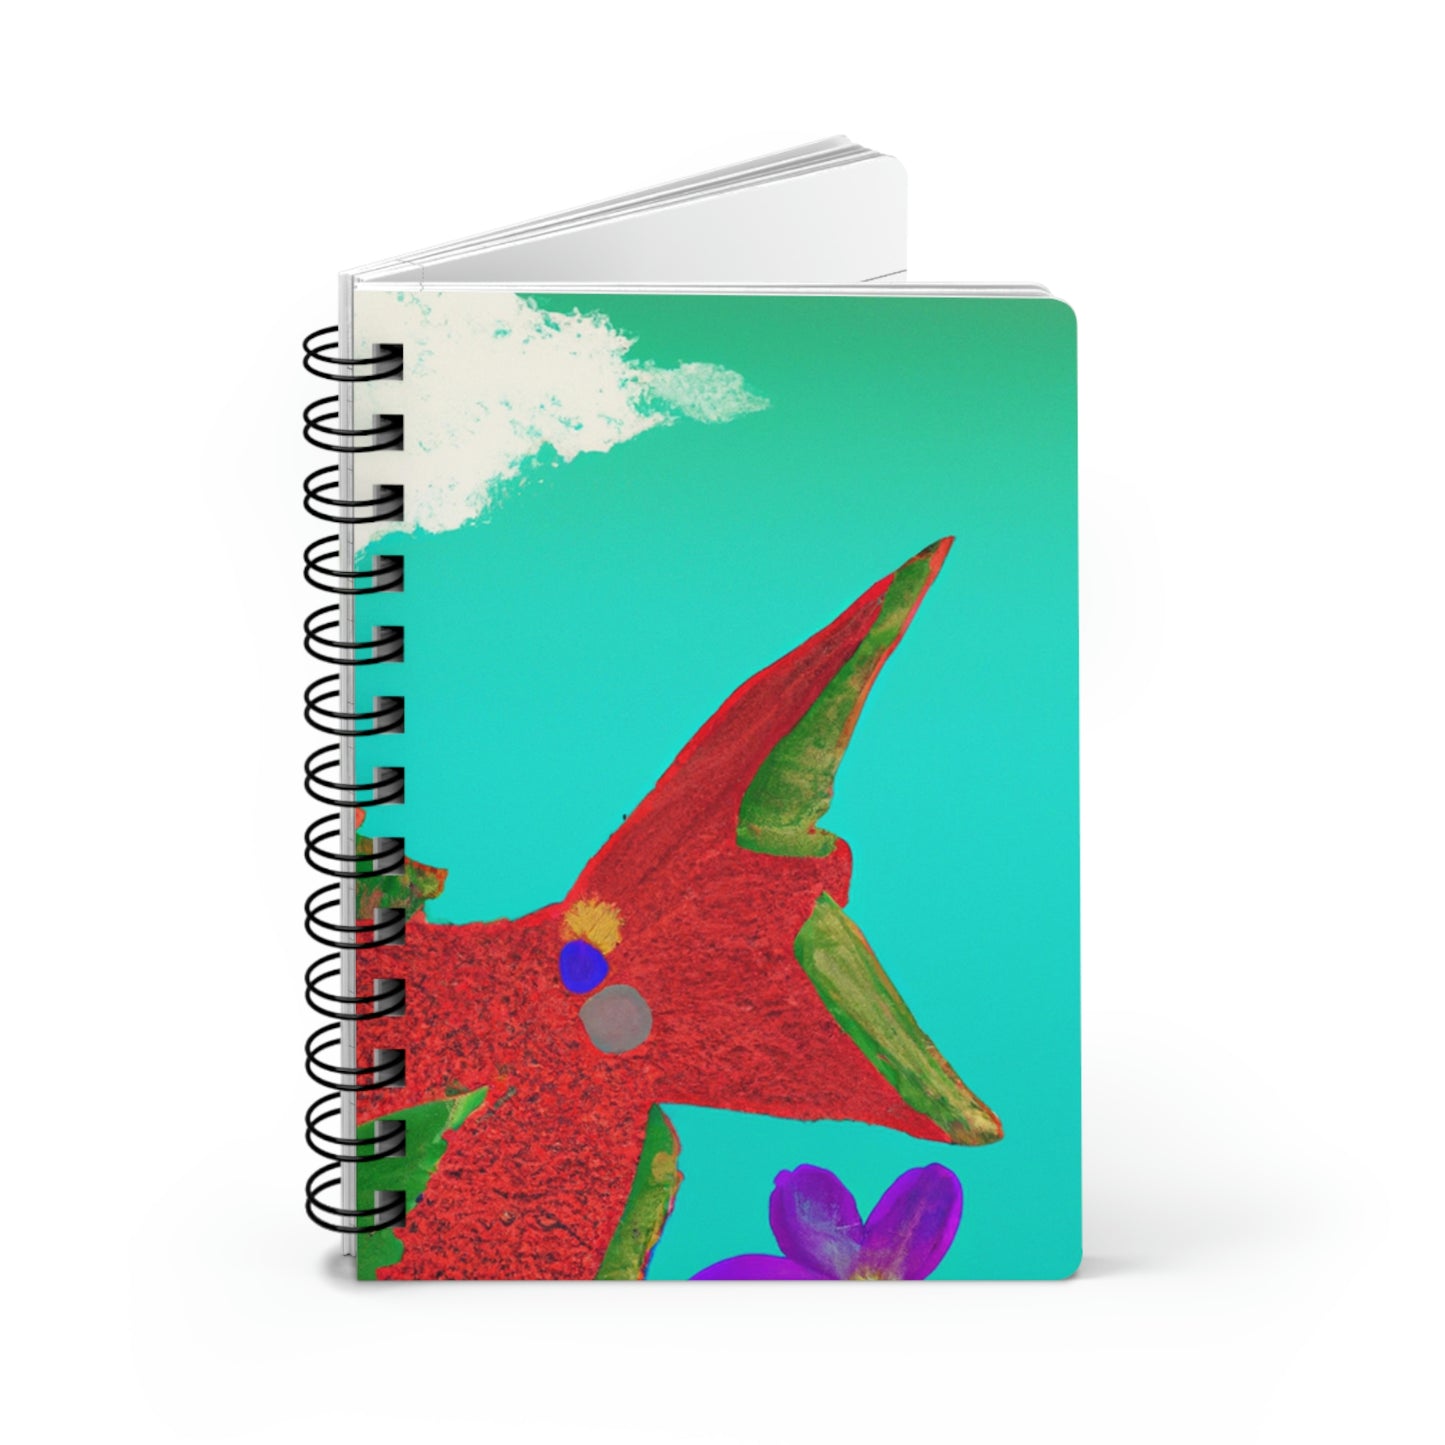 El misterioso pez volador y su enigmático secreto - The Alien Cuaderno encuadernado en espiral